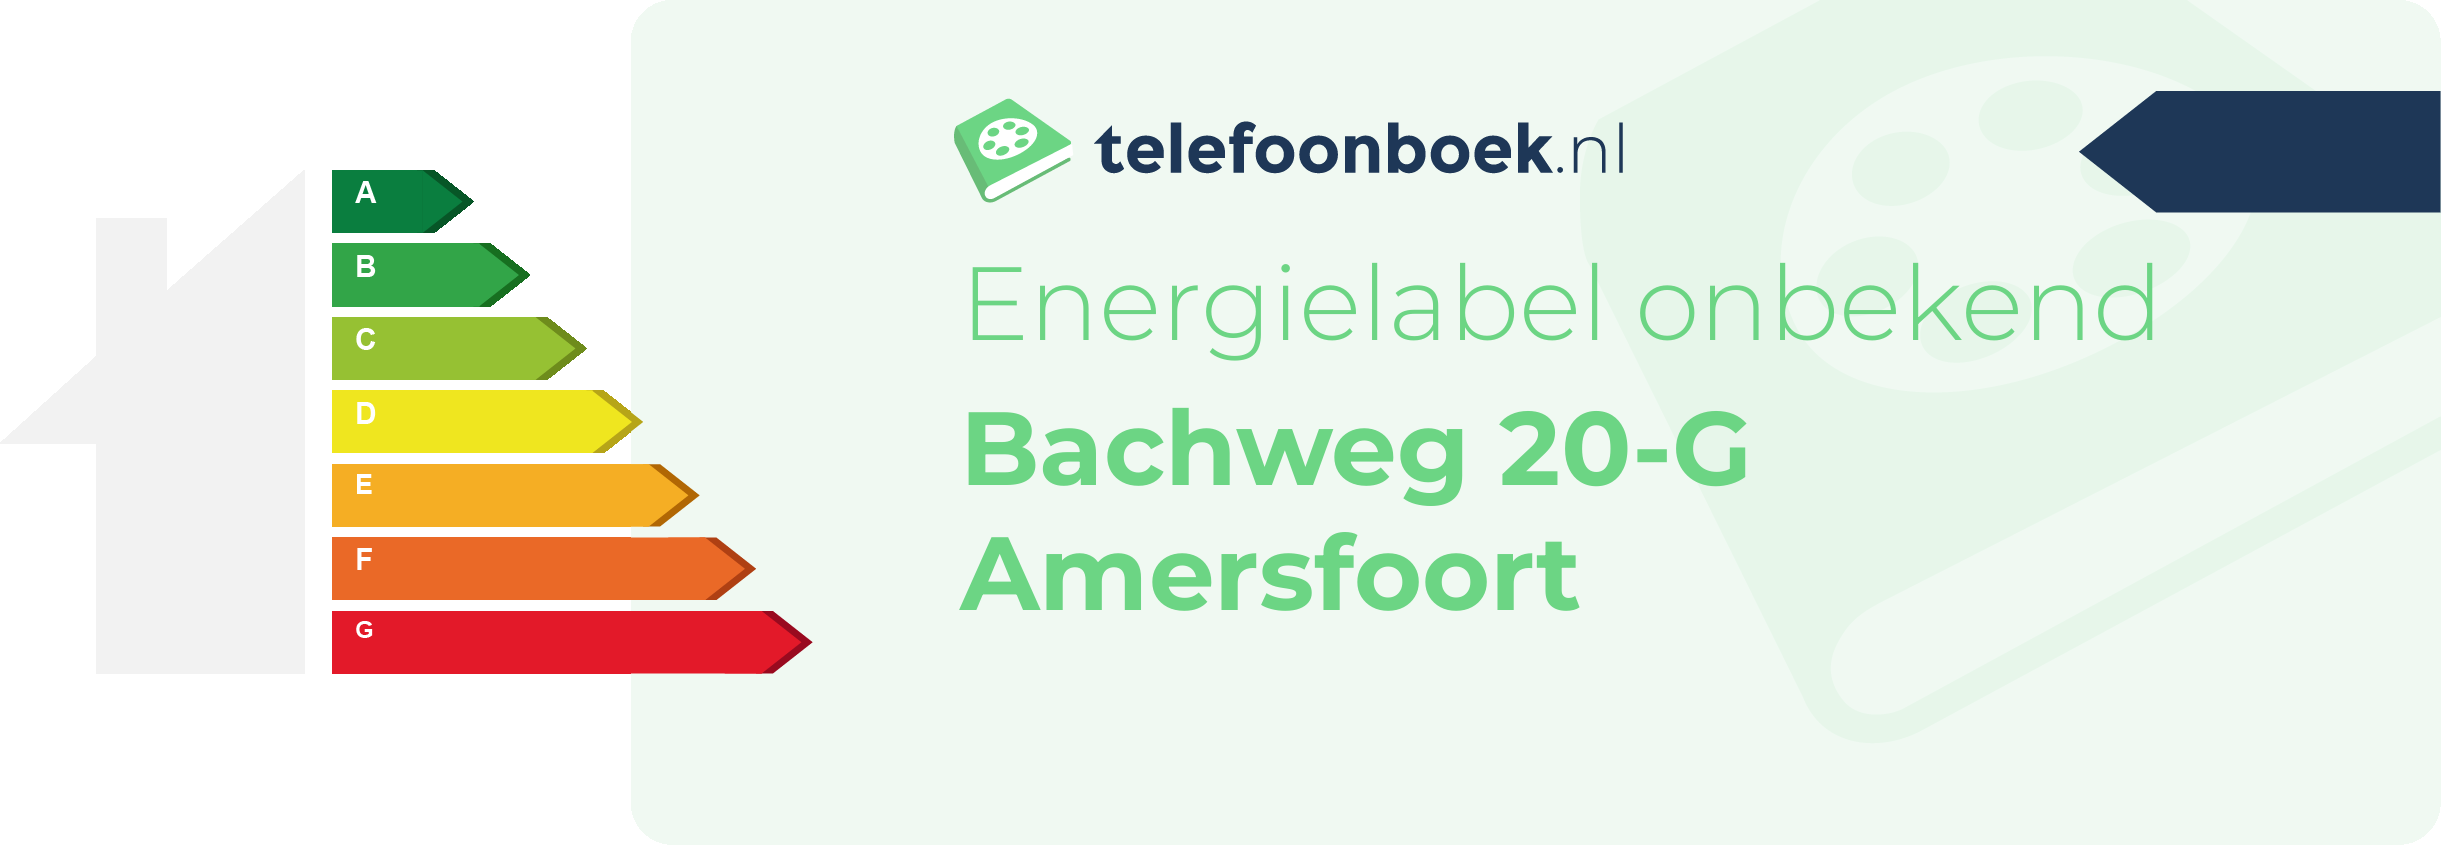 Energielabel Bachweg 20-G Amersfoort